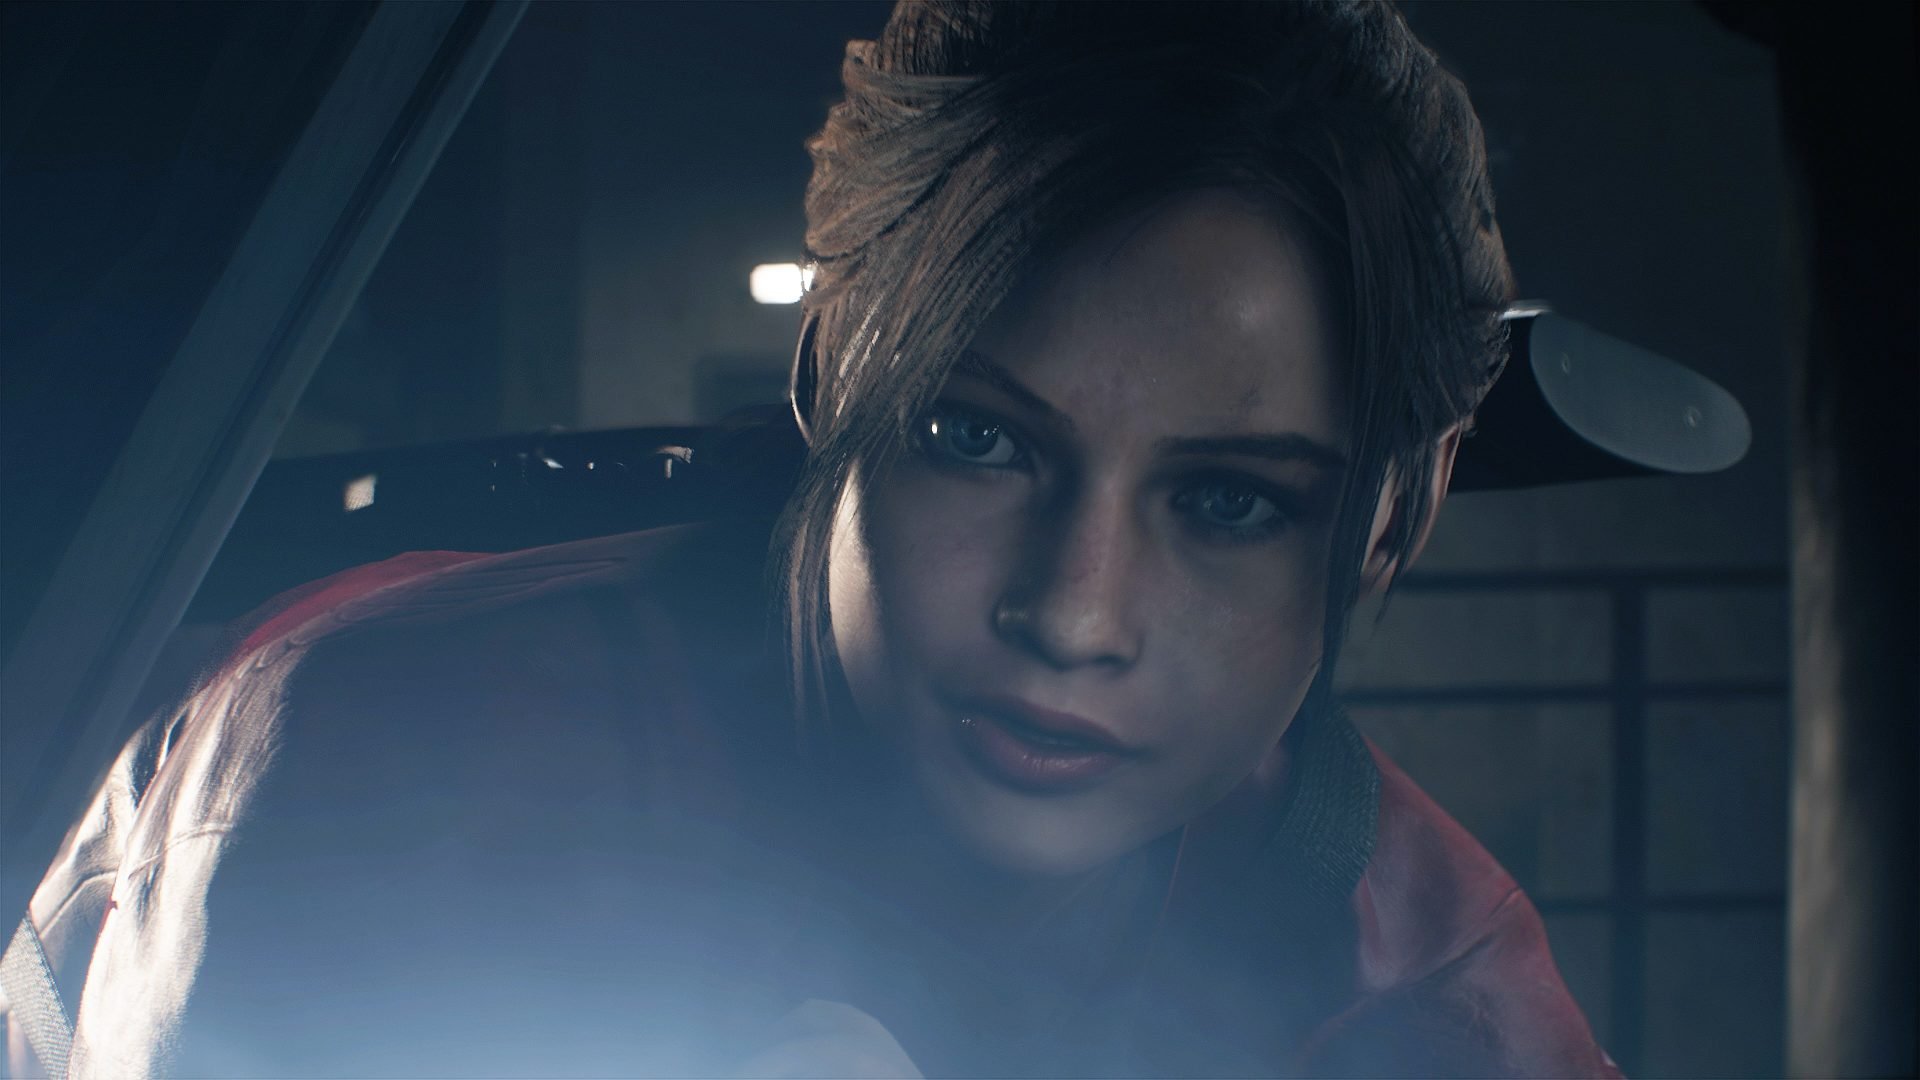 Conheça a modelo de Claire Redfield em Resident Evil 2 Remake